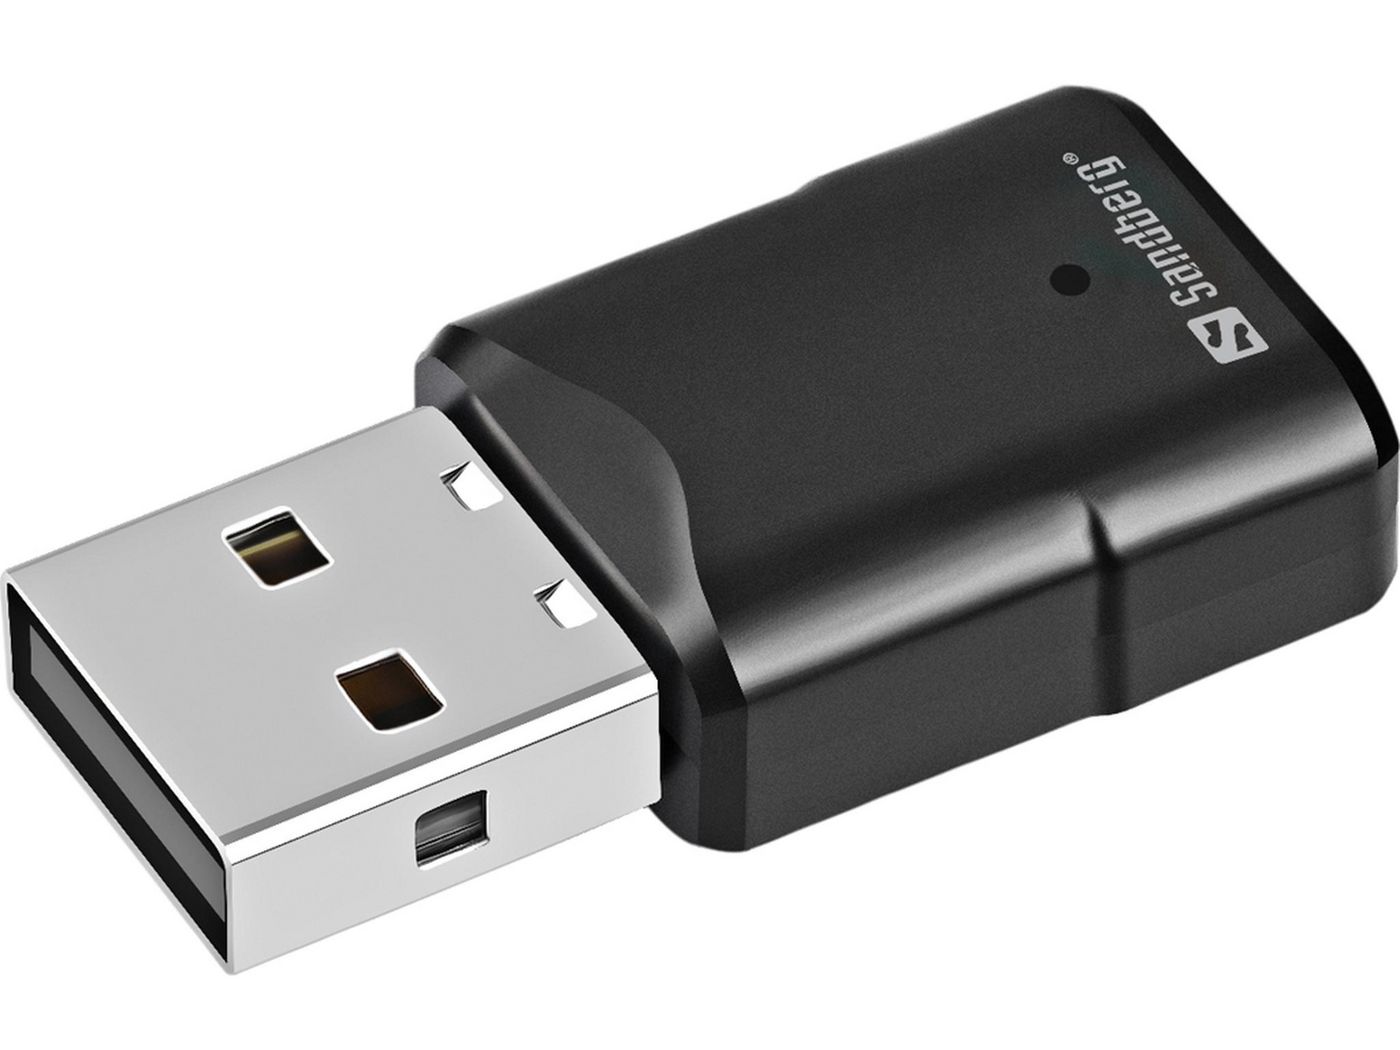  Bolt USB Receiver Logitech Bolt, USB Receiver, W126584295  (Logitech Bolt, USB Receiver, Black, Green) : Electronics